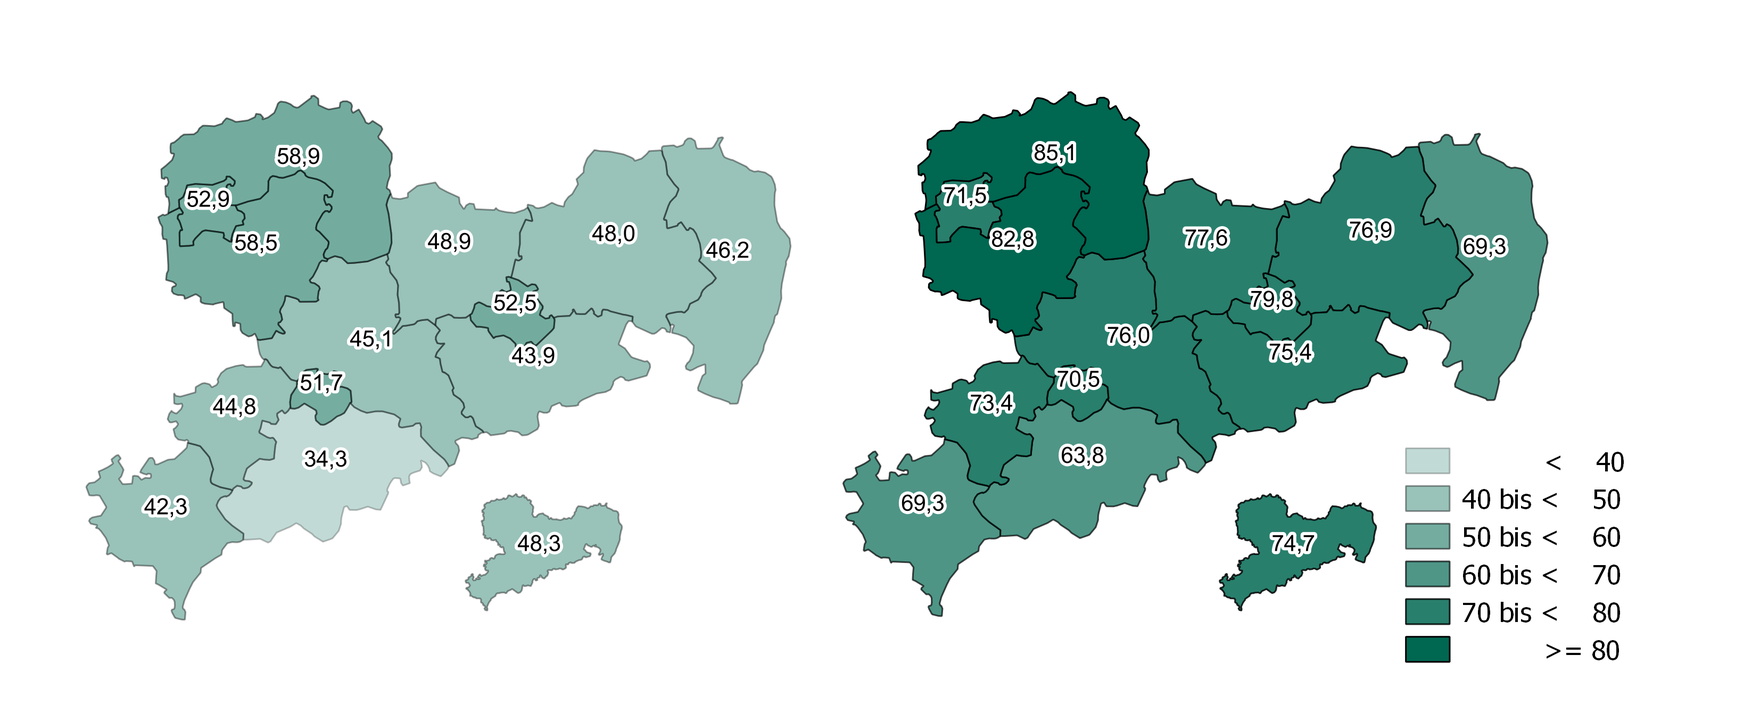 Die Betreuungsquote der 1-3-Jährigen schwankt in den sächsischen Landkreisen und kreisfreien Städten 2006 zwischen 34 und 59 Prozent. Im Jahr 2015 ist die Quote deutlich gestiegen und bewegt sich zwischen 63 und 86 Prozent. Dabei weisen noch immer dieselben Kreise die niedrigste beziehungsweise höchste Betreuungsquote auf.